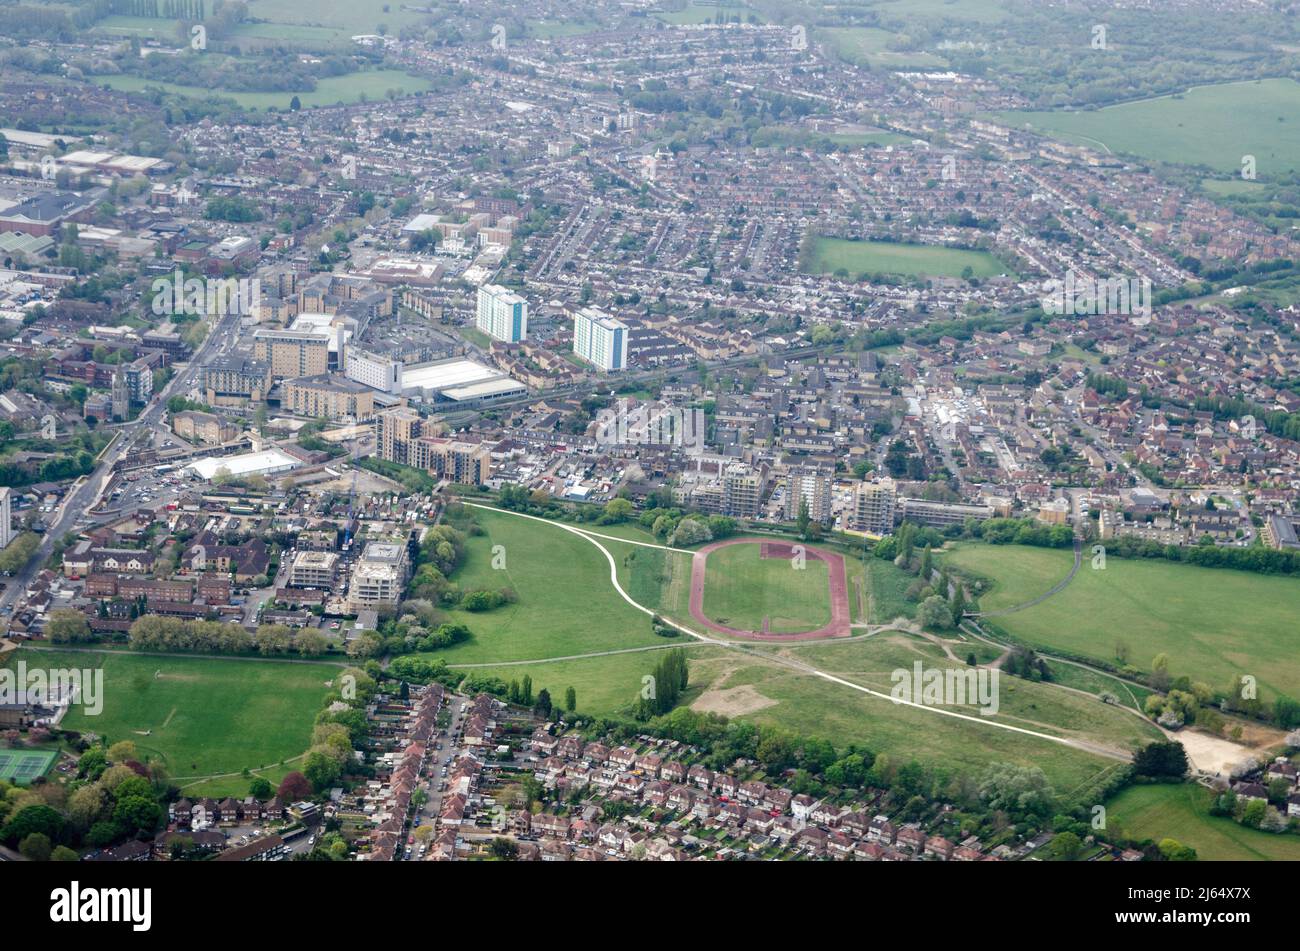 Vista desde arriba del centro de Feltham en Hounslow, Londres Occidental con la pista de atletismo, parte de Feltham Arenas, en el medio. Foto de stock